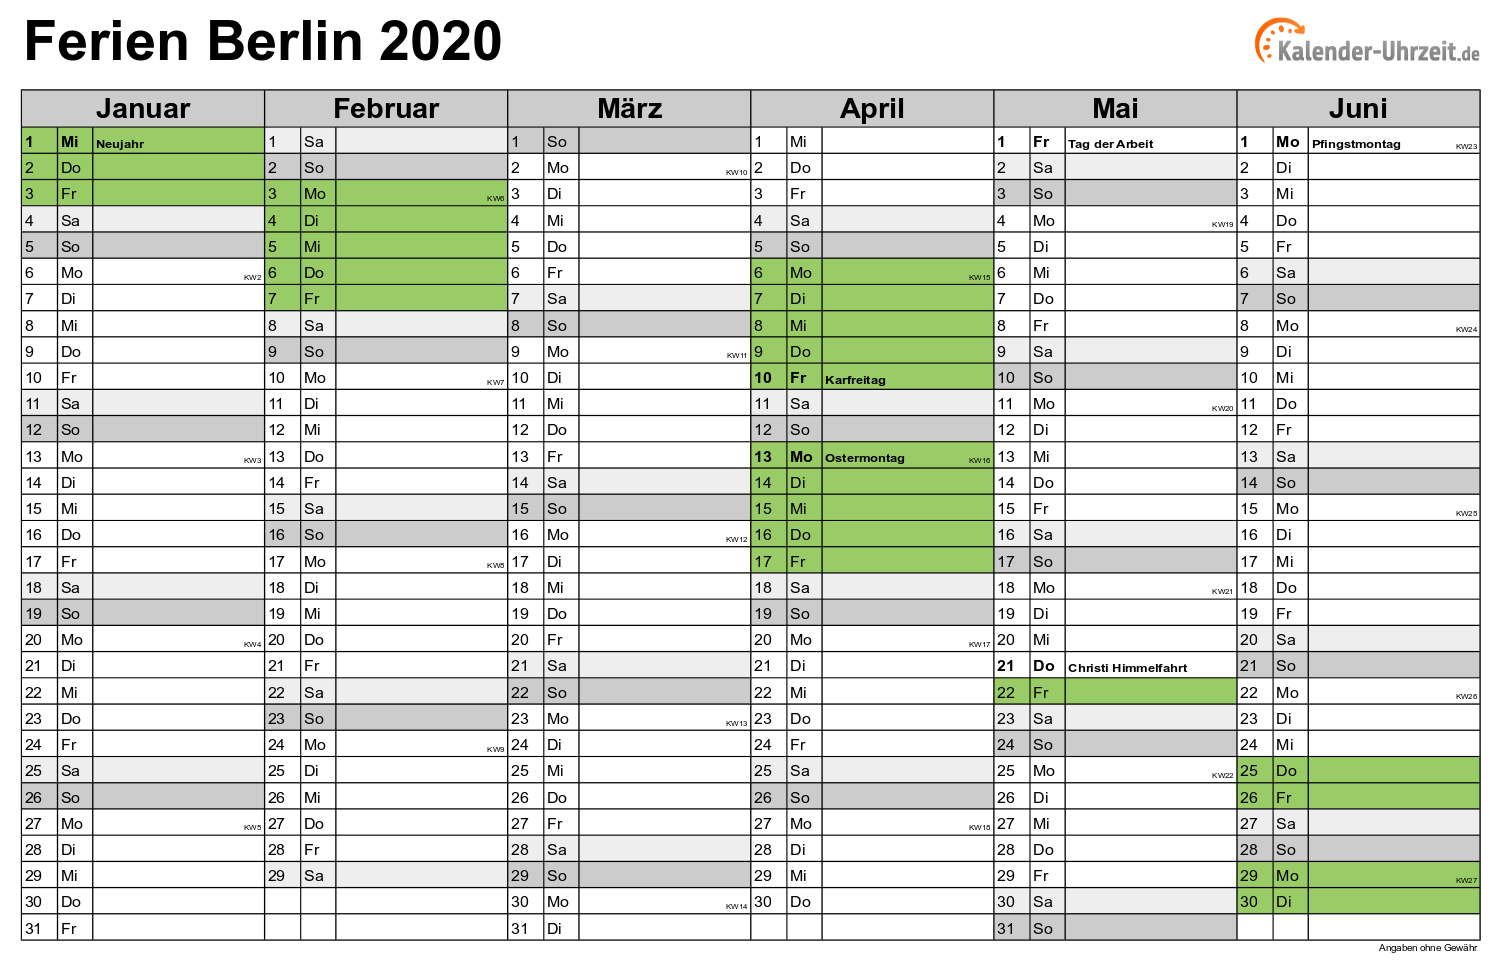 Ferienkalender Berlin